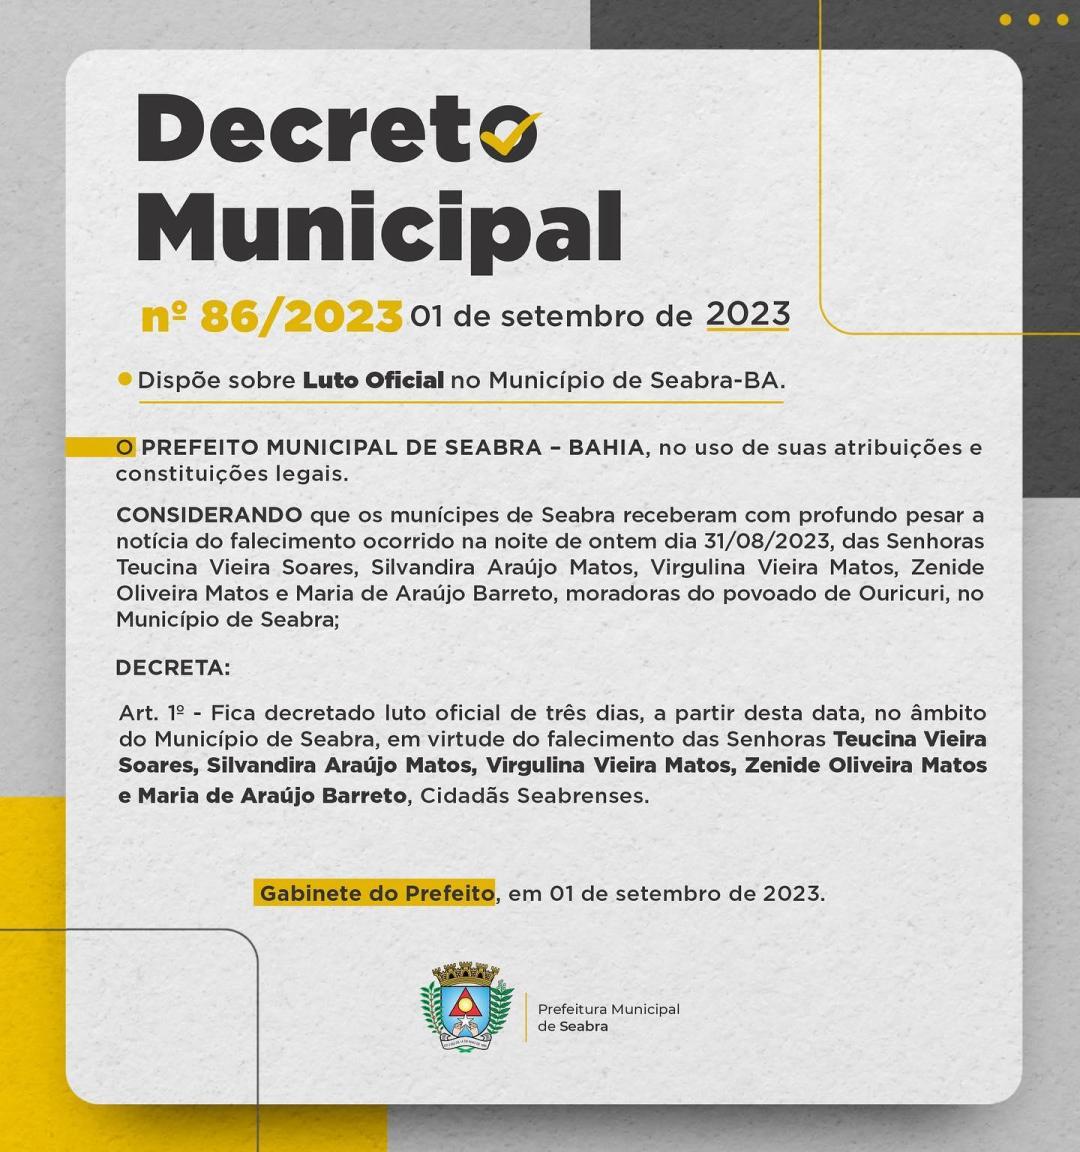 DECRETO MUNICIPAL No 86/2023, DE 01 DE SETEMBRO DE 2023.